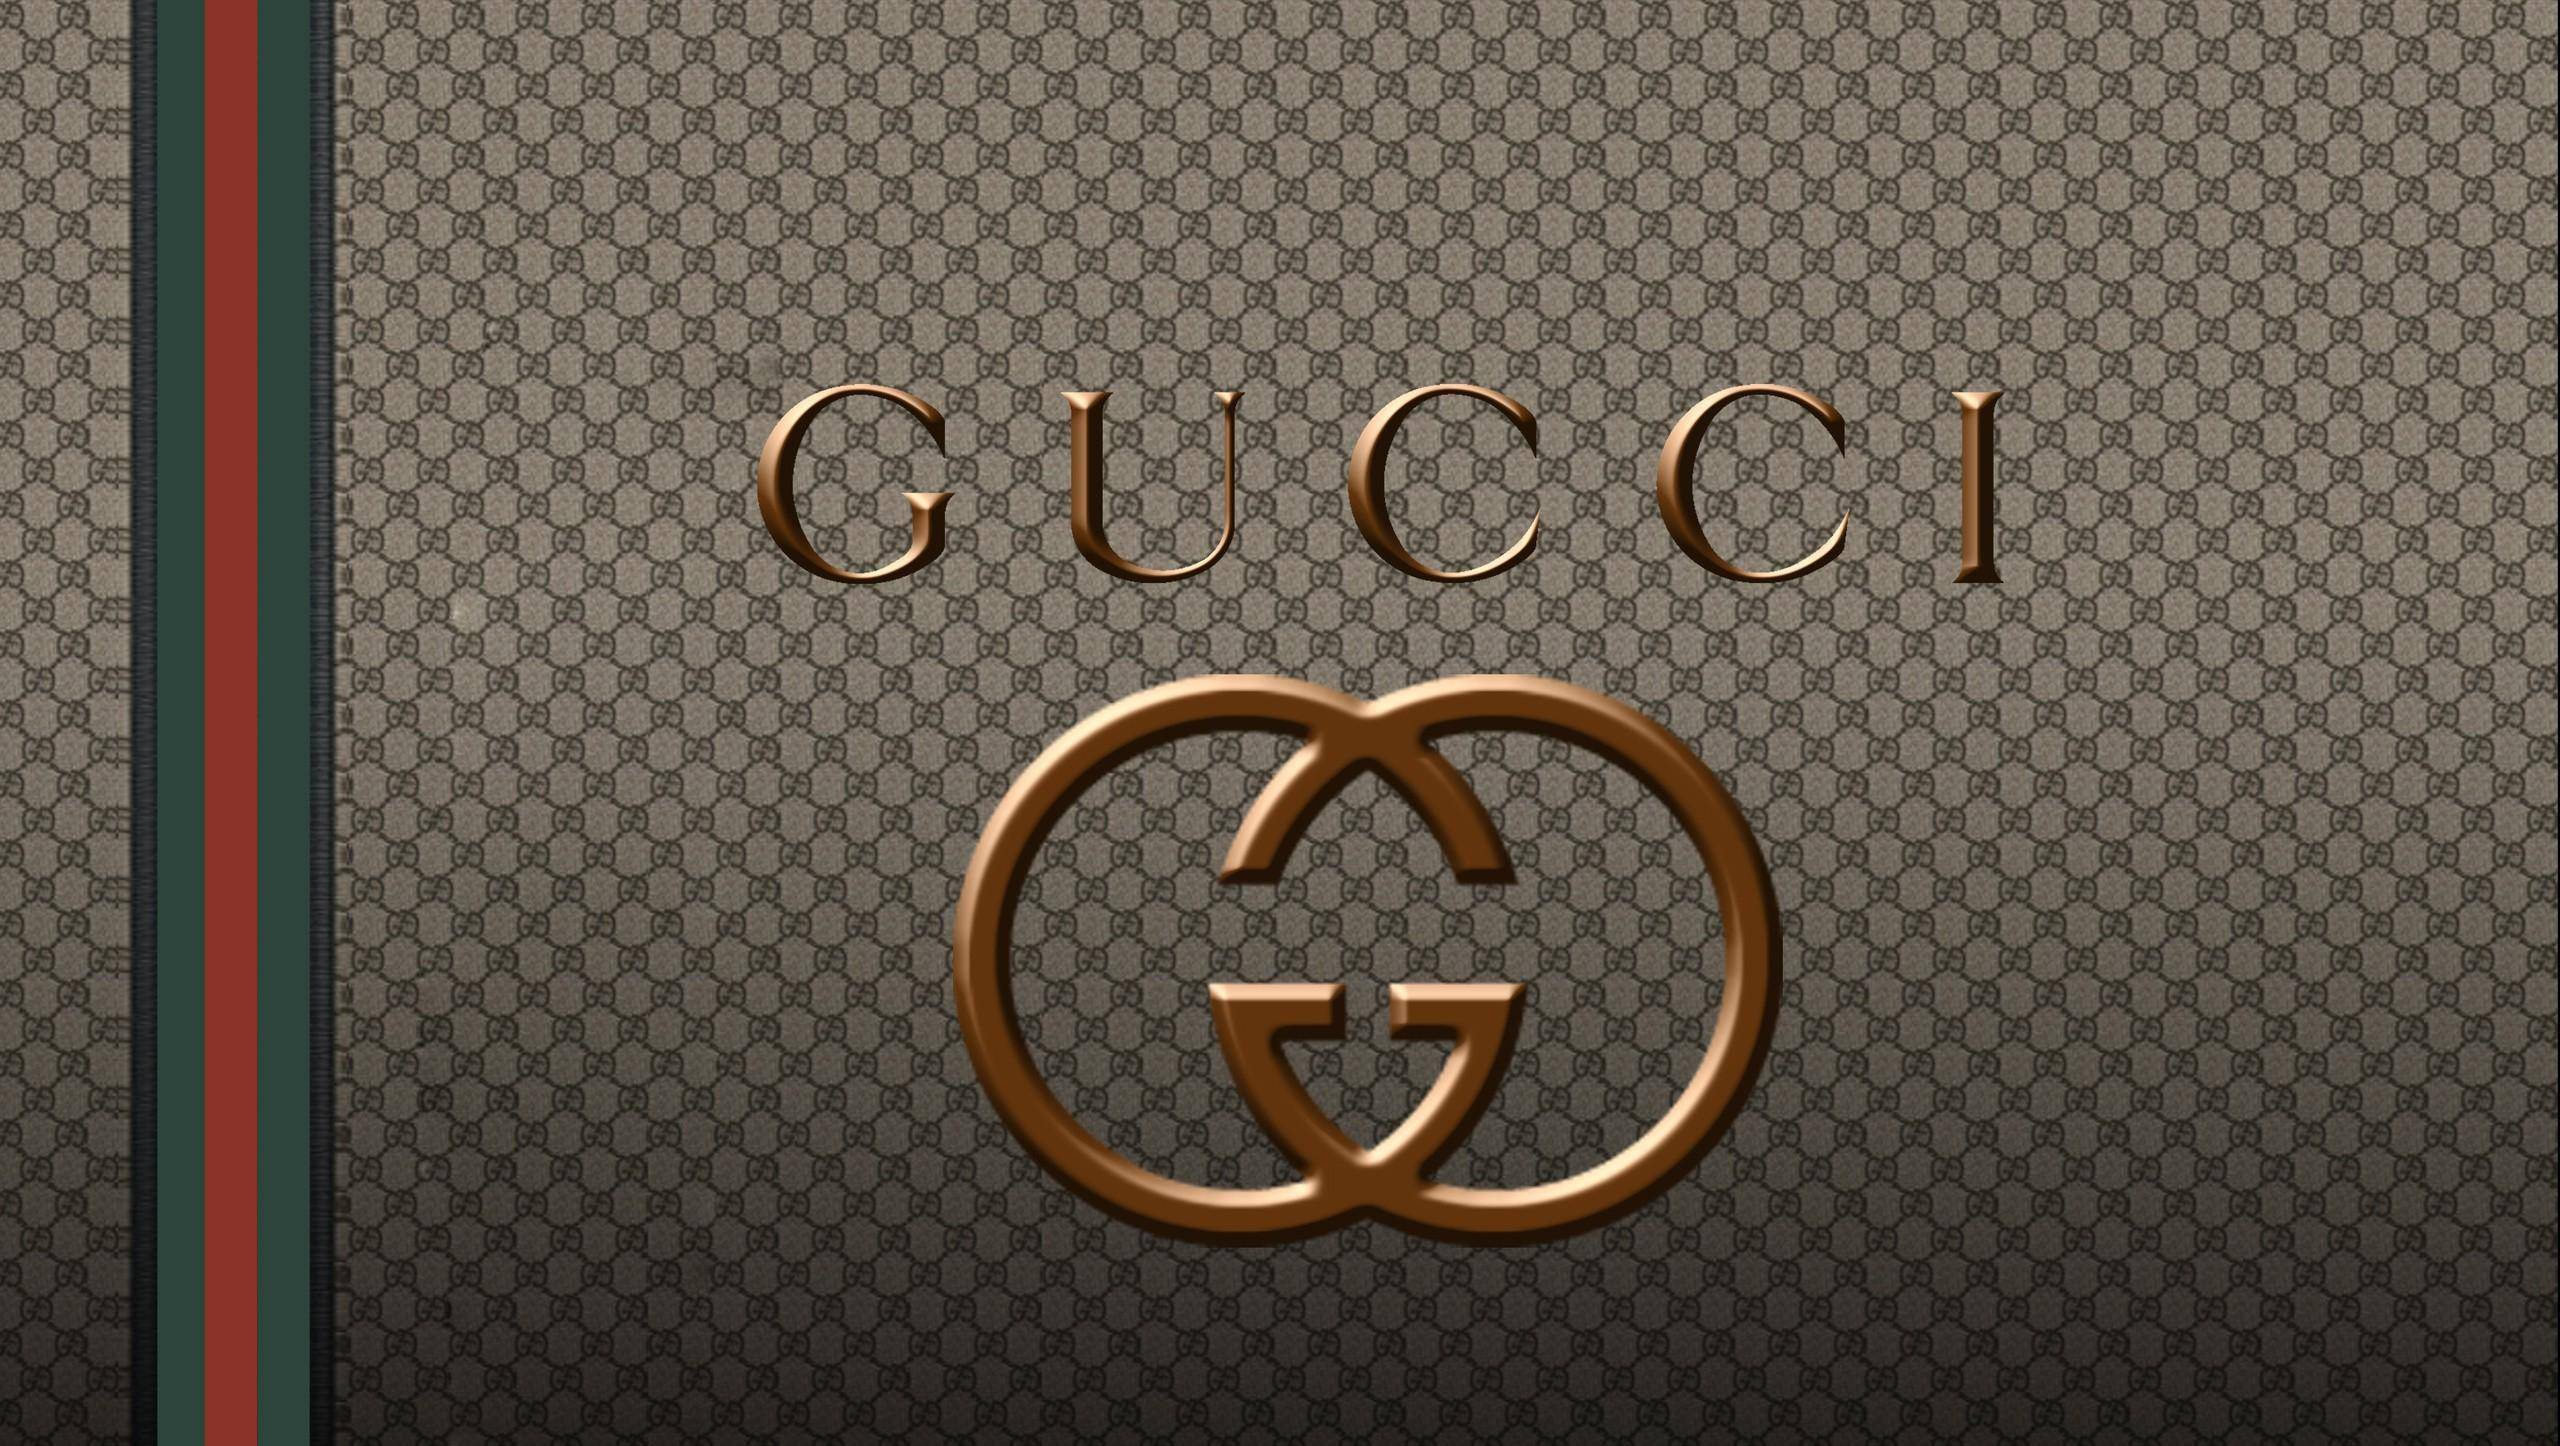 两分钟了解一个品牌:gucci